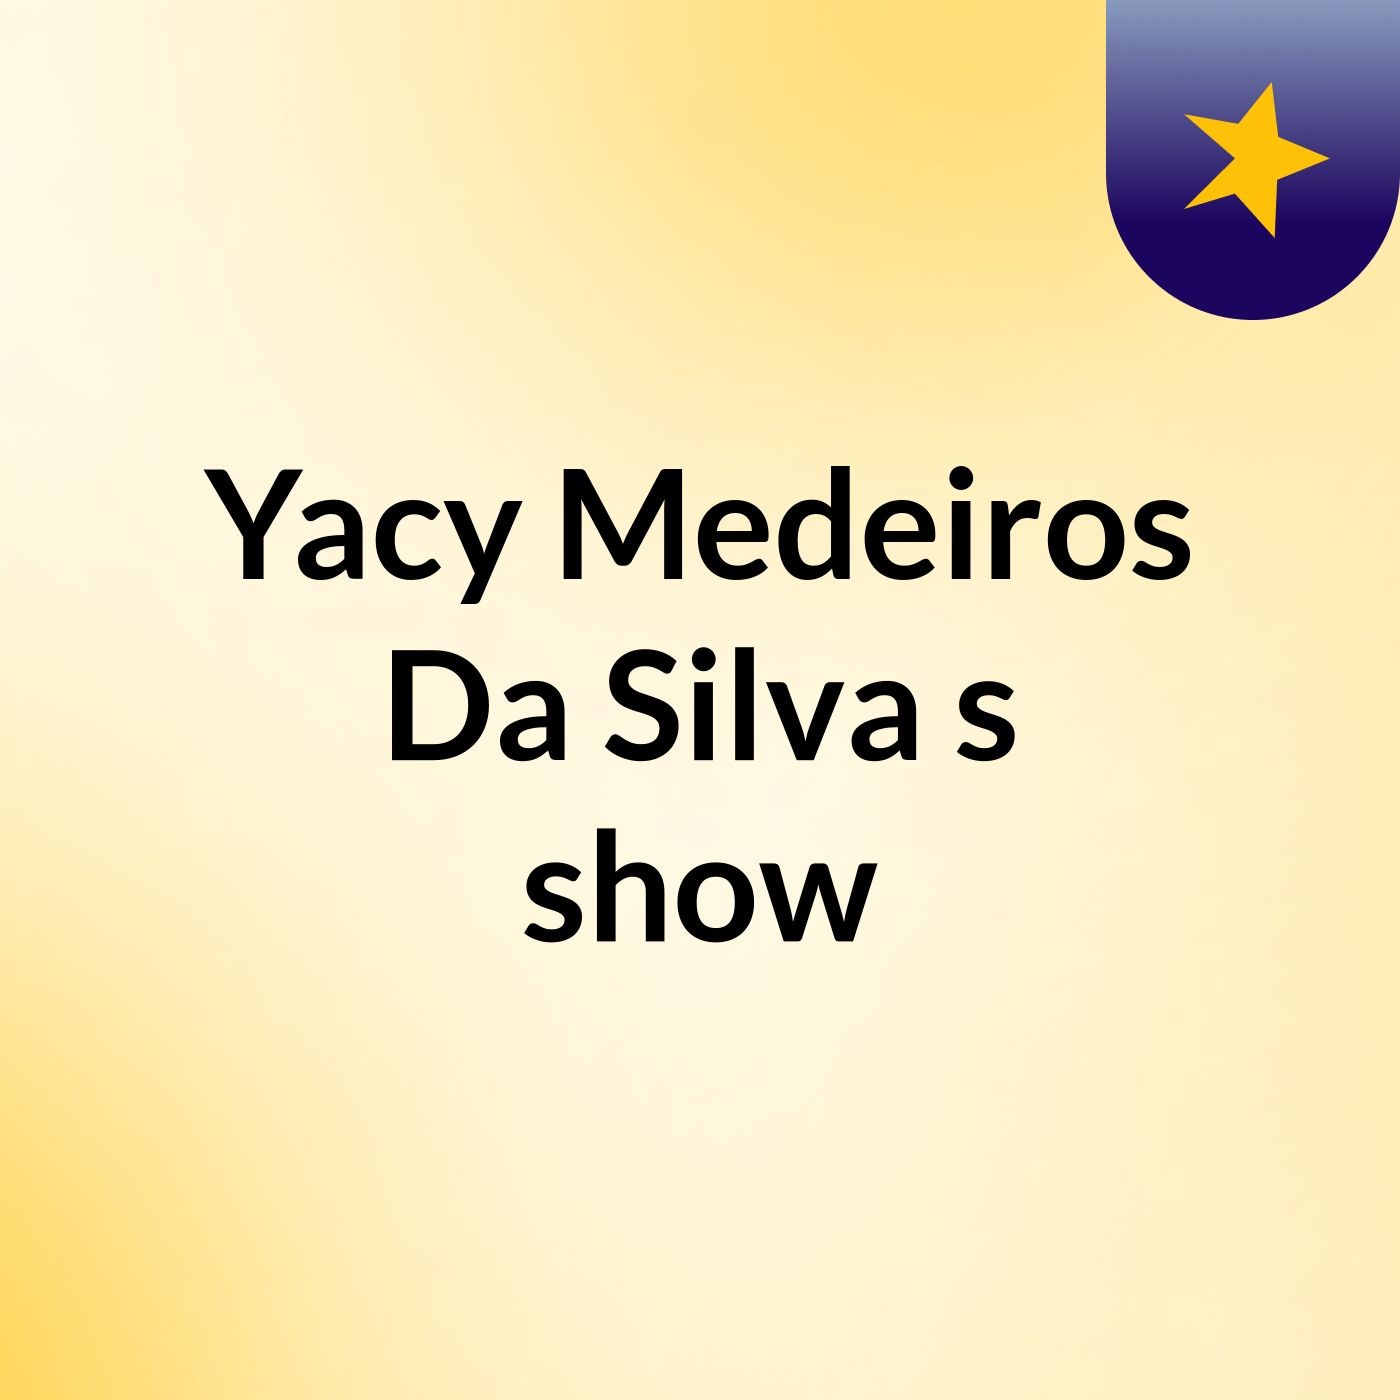 Yacy Medeiros Da Silva's show